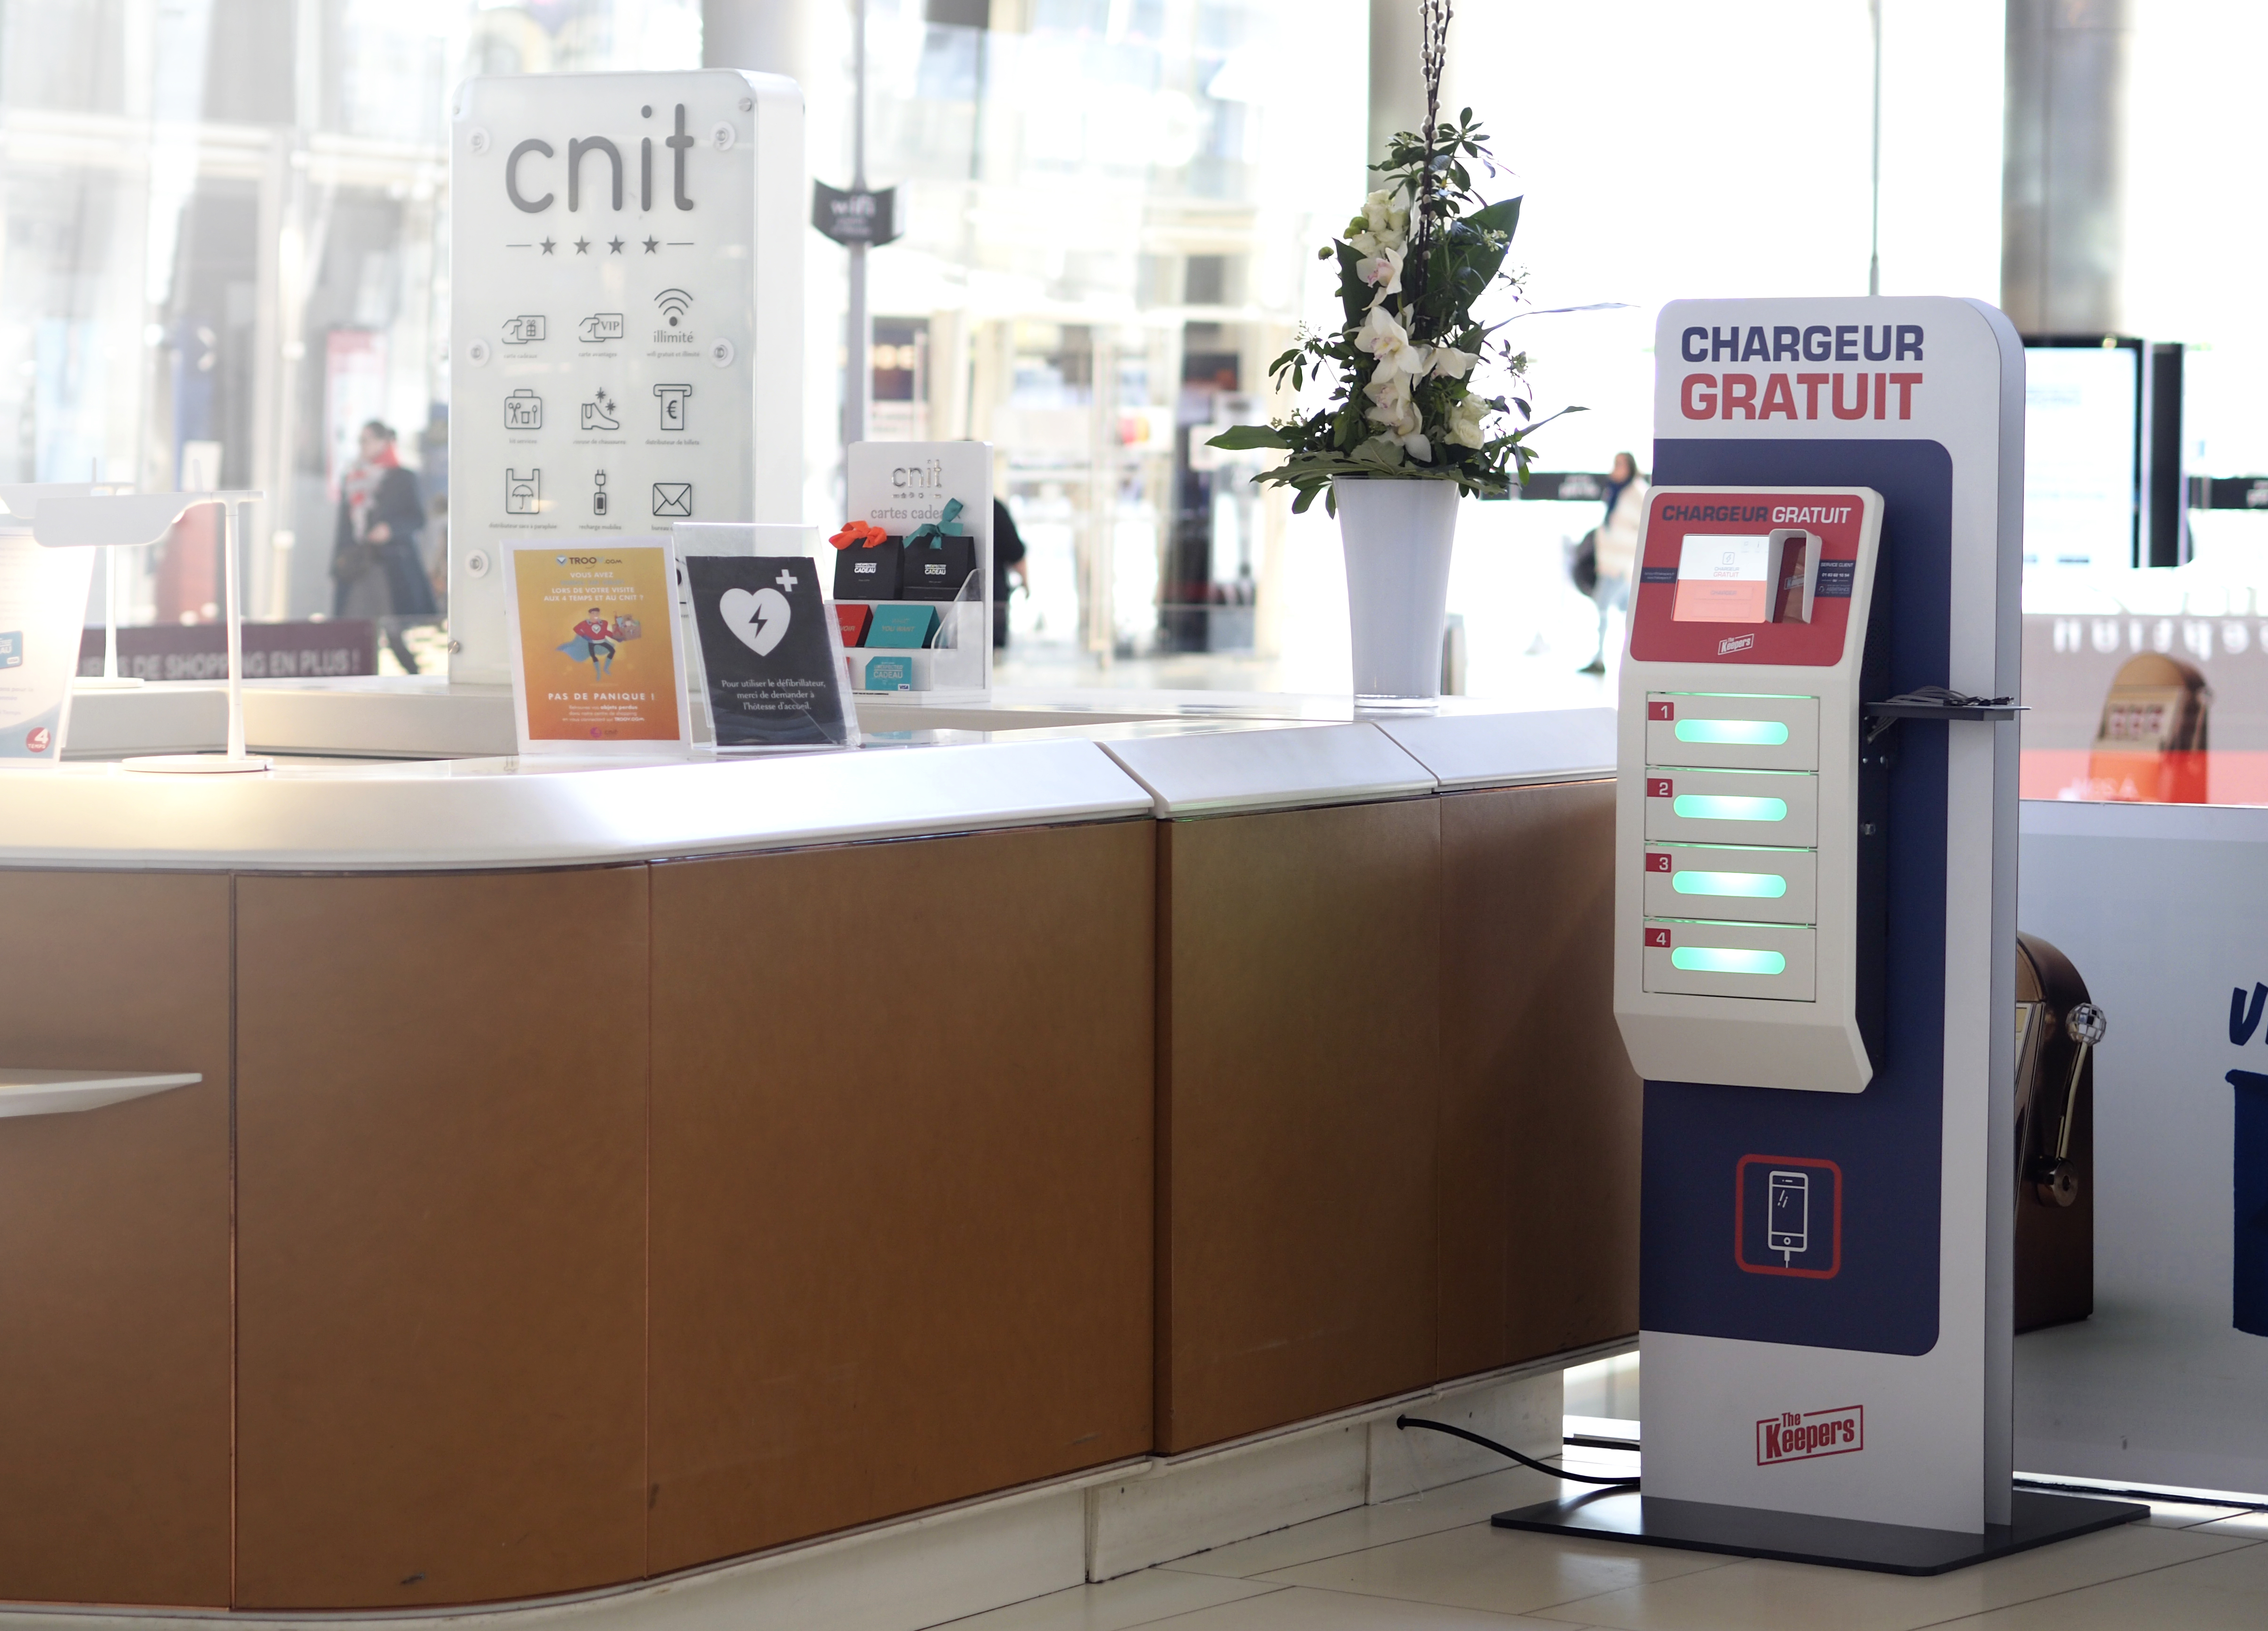 Borne casiers de recharge de téléphones pour salle d'attente en Gare 